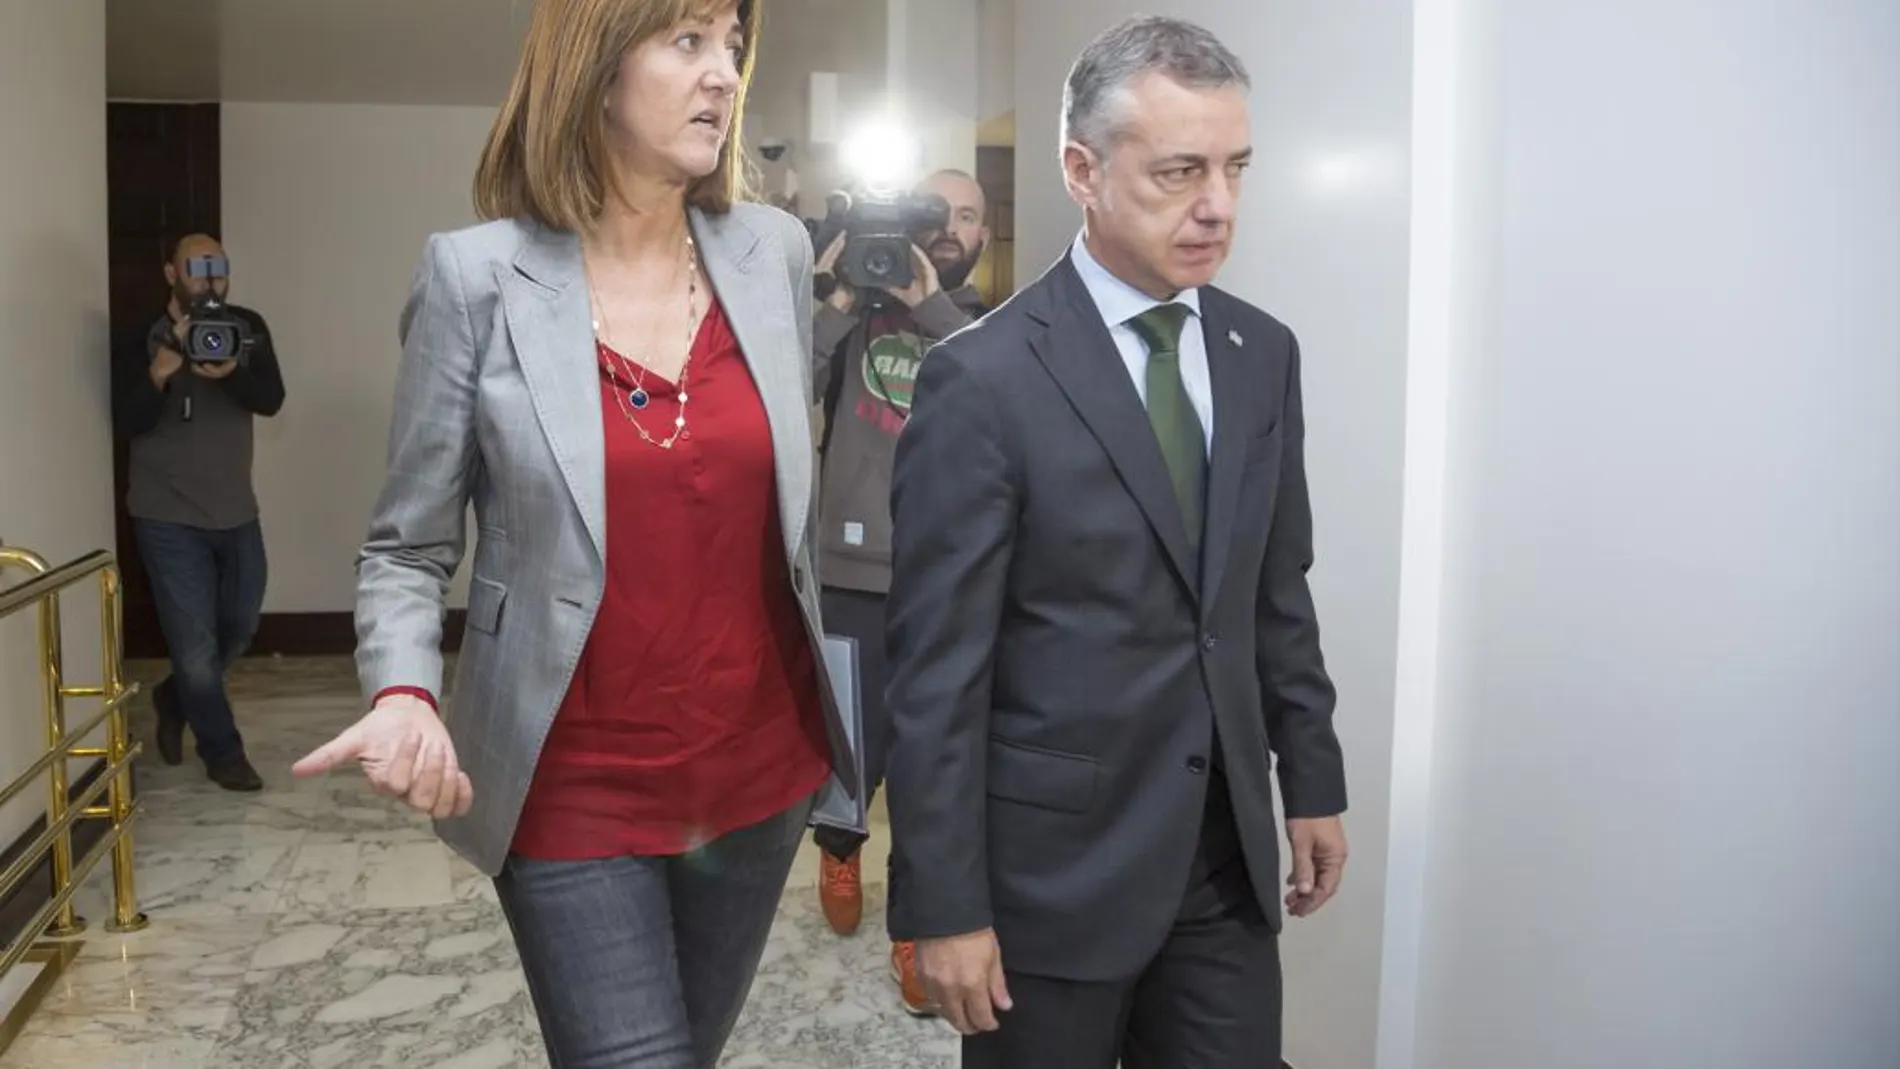 La líder del PSE, Idoia Mendia, junto al futuro lendakari, Iñigo Urkullu, en el Parlamento vasco